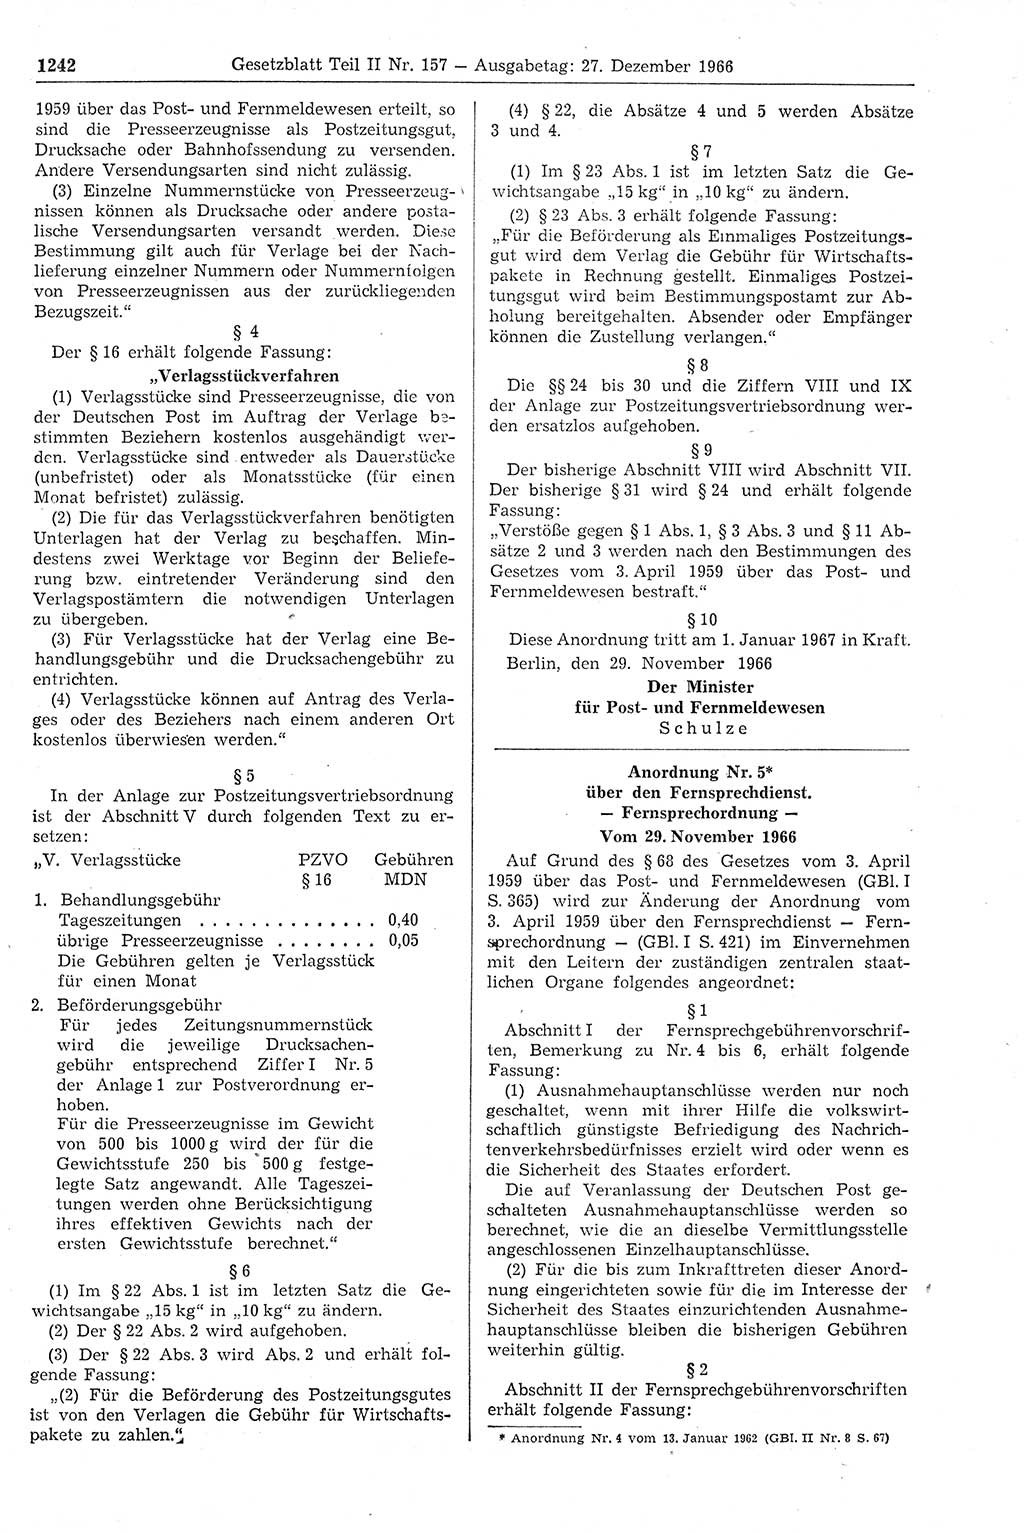 Gesetzblatt (GBl.) der Deutschen Demokratischen Republik (DDR) Teil ⅠⅠ 1966, Seite 1242 (GBl. DDR ⅠⅠ 1966, S. 1242)